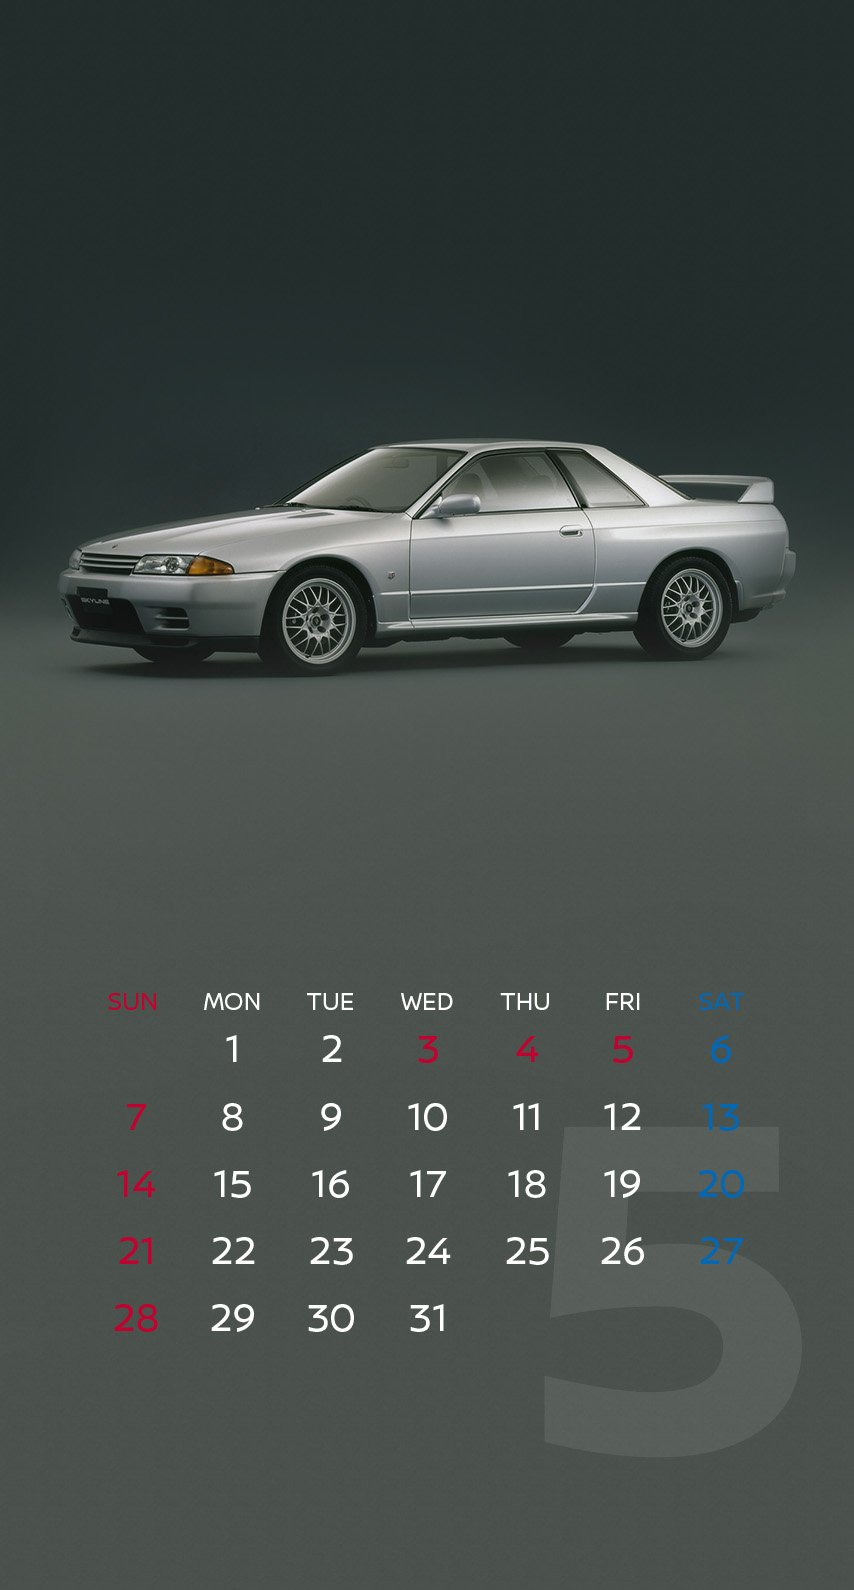 日産自動車株式会社 壁紙カレンダー 5月はスカイライン V37型 スカイライン Gt R R32型 6代目 R30型 の3台 Nissancrossing で60周年記念特別プレゼンテーション実施中 T Co Plqfdwvoyw T Co